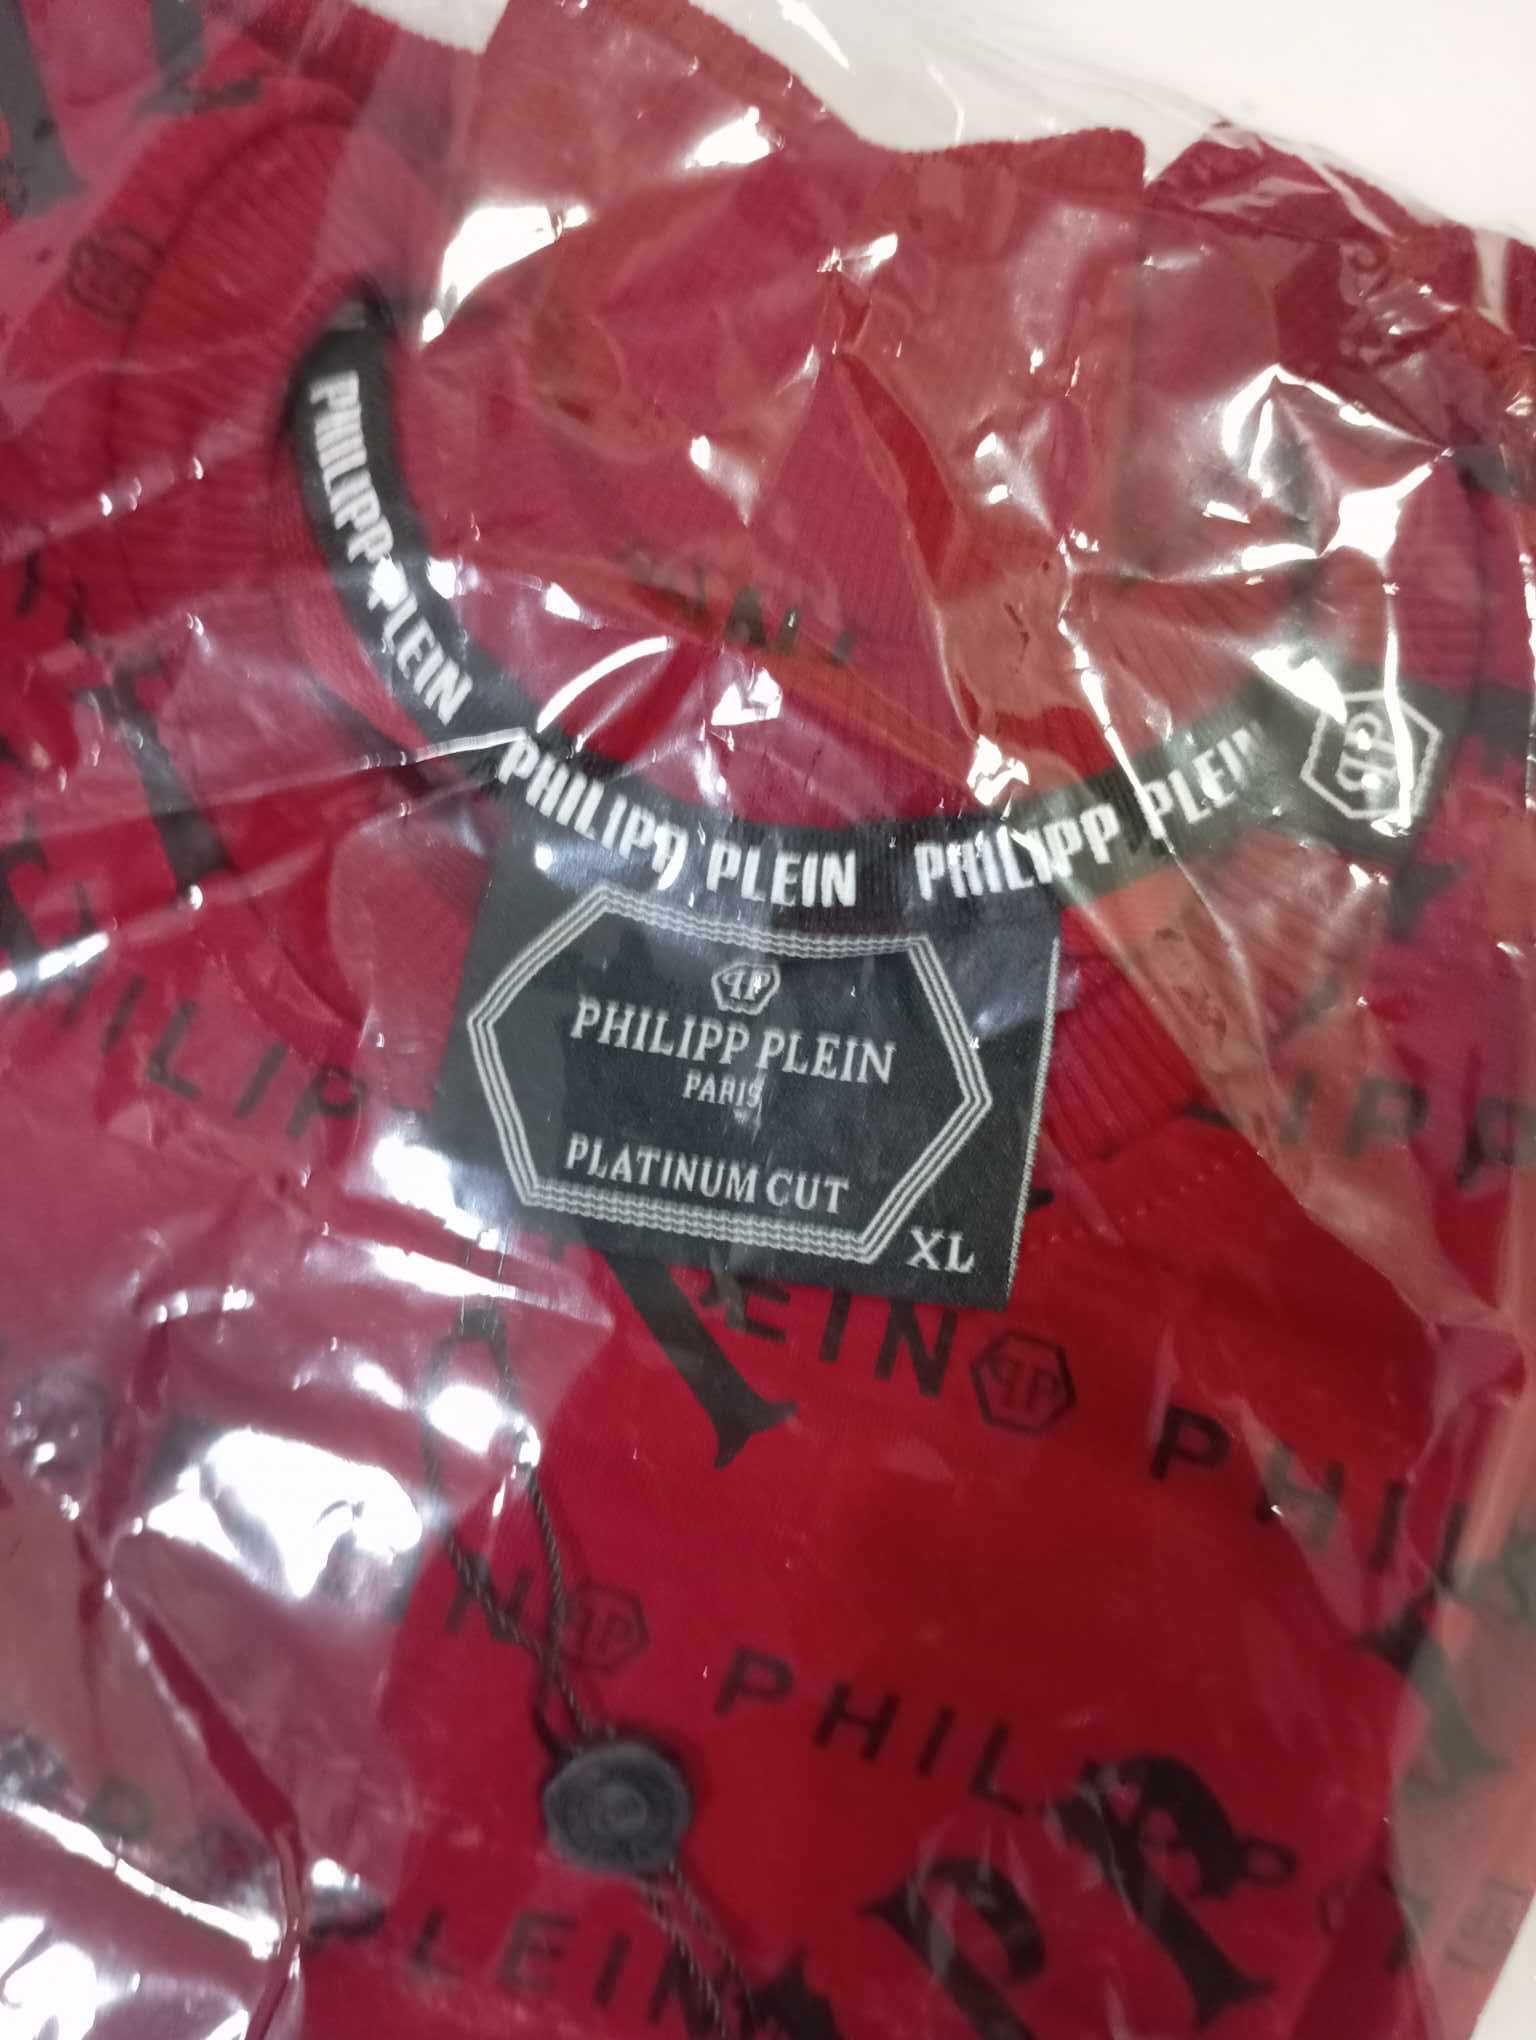 Bluza Philipp Plein, w klasycznym wydaniu, czerwona XL, nowość!